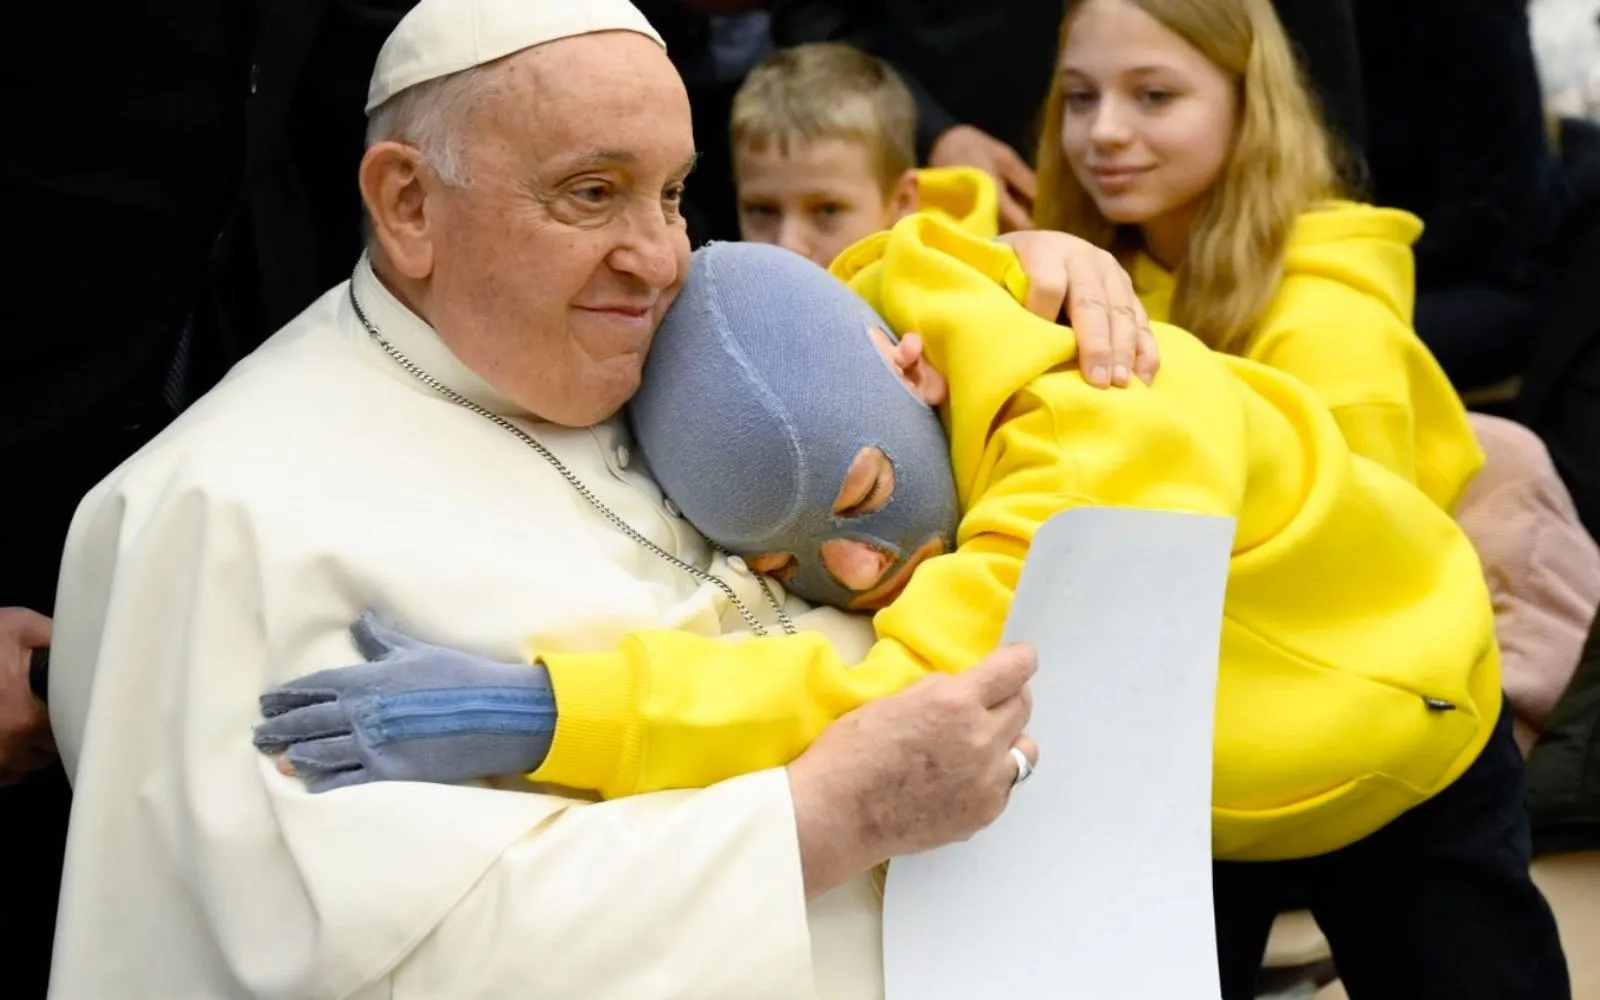 Imagen referencial / El Papa Francisco abraza a un enfermo en el Vaticano.?w=200&h=150